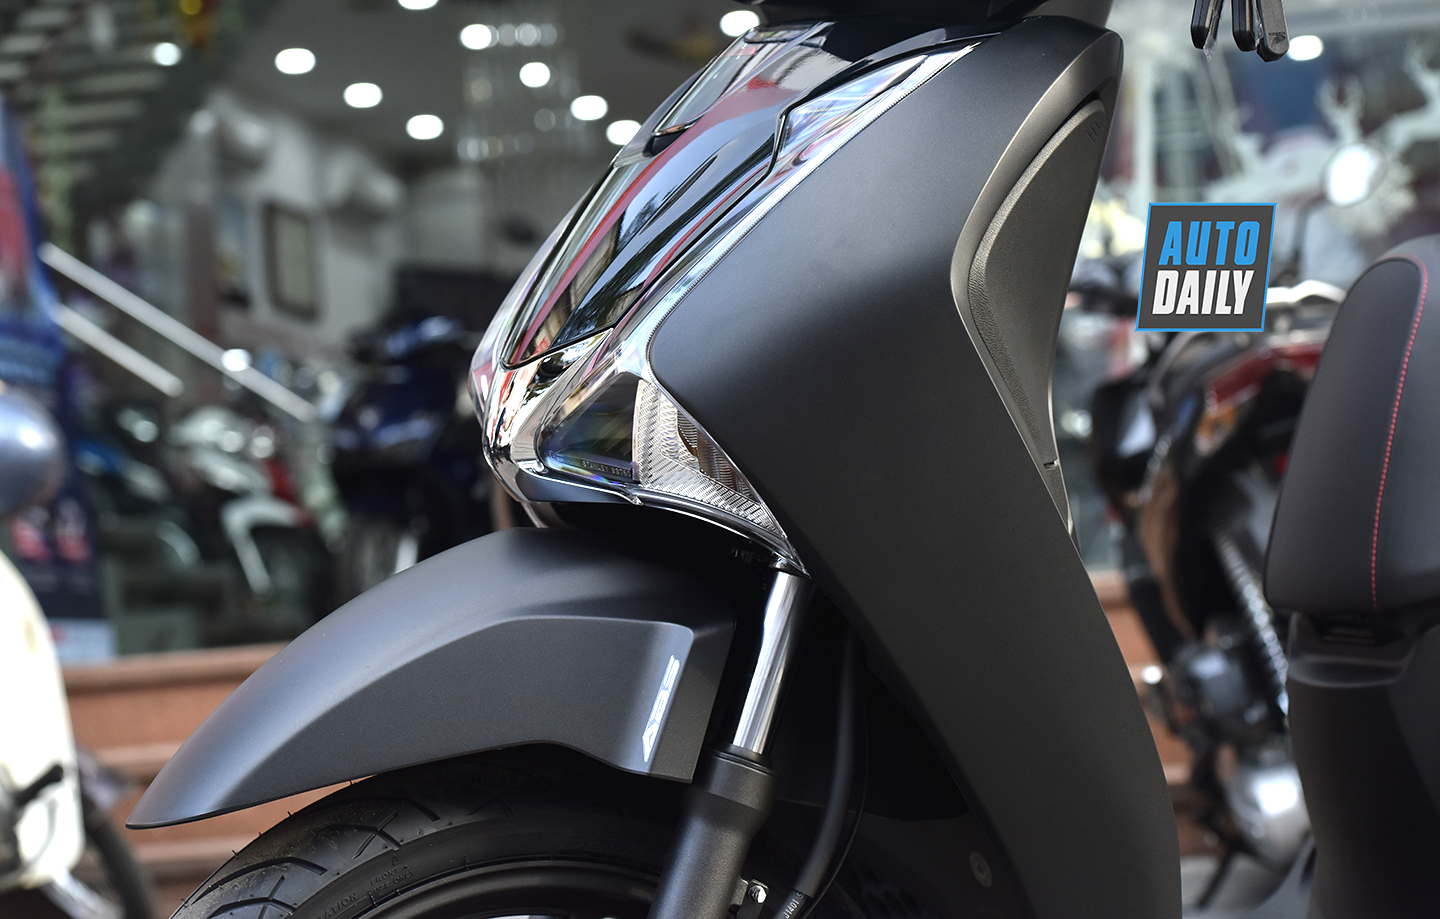 Honda SH 2019 màu đen mờ là chiếc xe máy đầy phong cách, cá tính và thể hiện sự sang trọng. Với tính năng hiện đại và tiết kiệm nhiên liệu, Honda SH 2019 chắc chắn sẽ là một sự lựa chọn tốt cho những ai yêu thích thể loại xe tay ga.